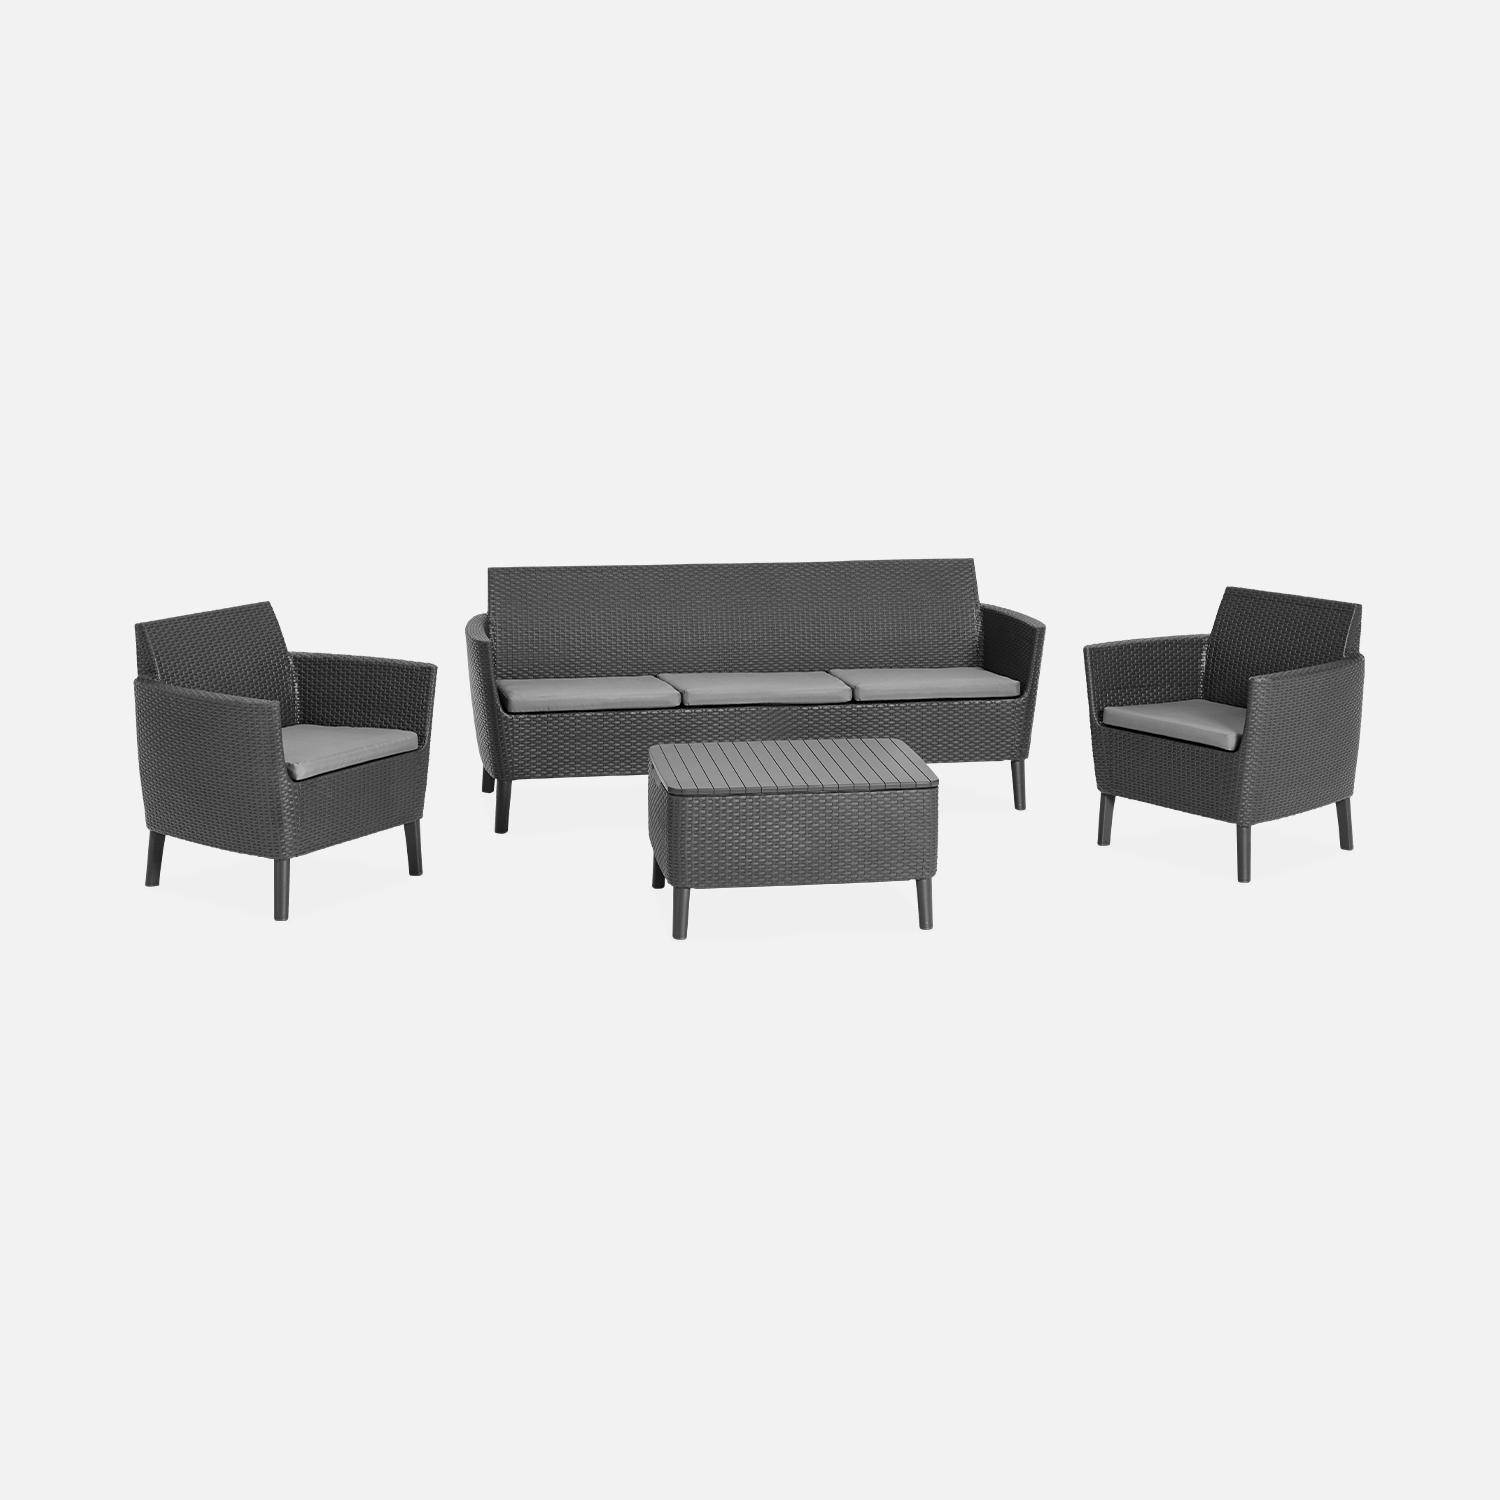 Loungeset van spuitgegoten kunsthars met imitatierotan detail, 5 zitplaatsen, een bank, twee fauteuils, een salontafel - grafiet/grijs  Photo3